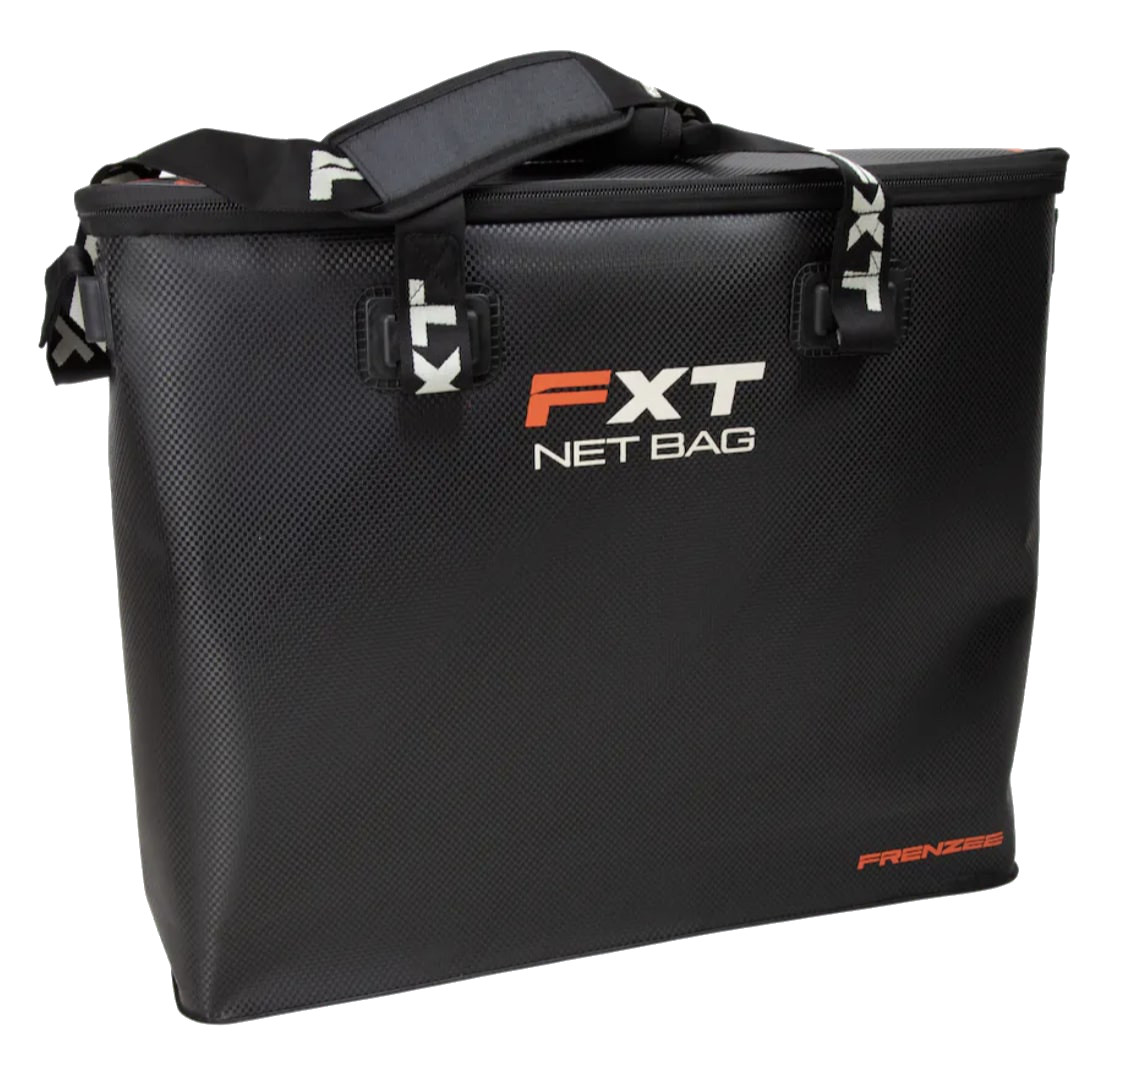 Frenzee FXT EVA Net Bag Bolsa para red de captura - Standard